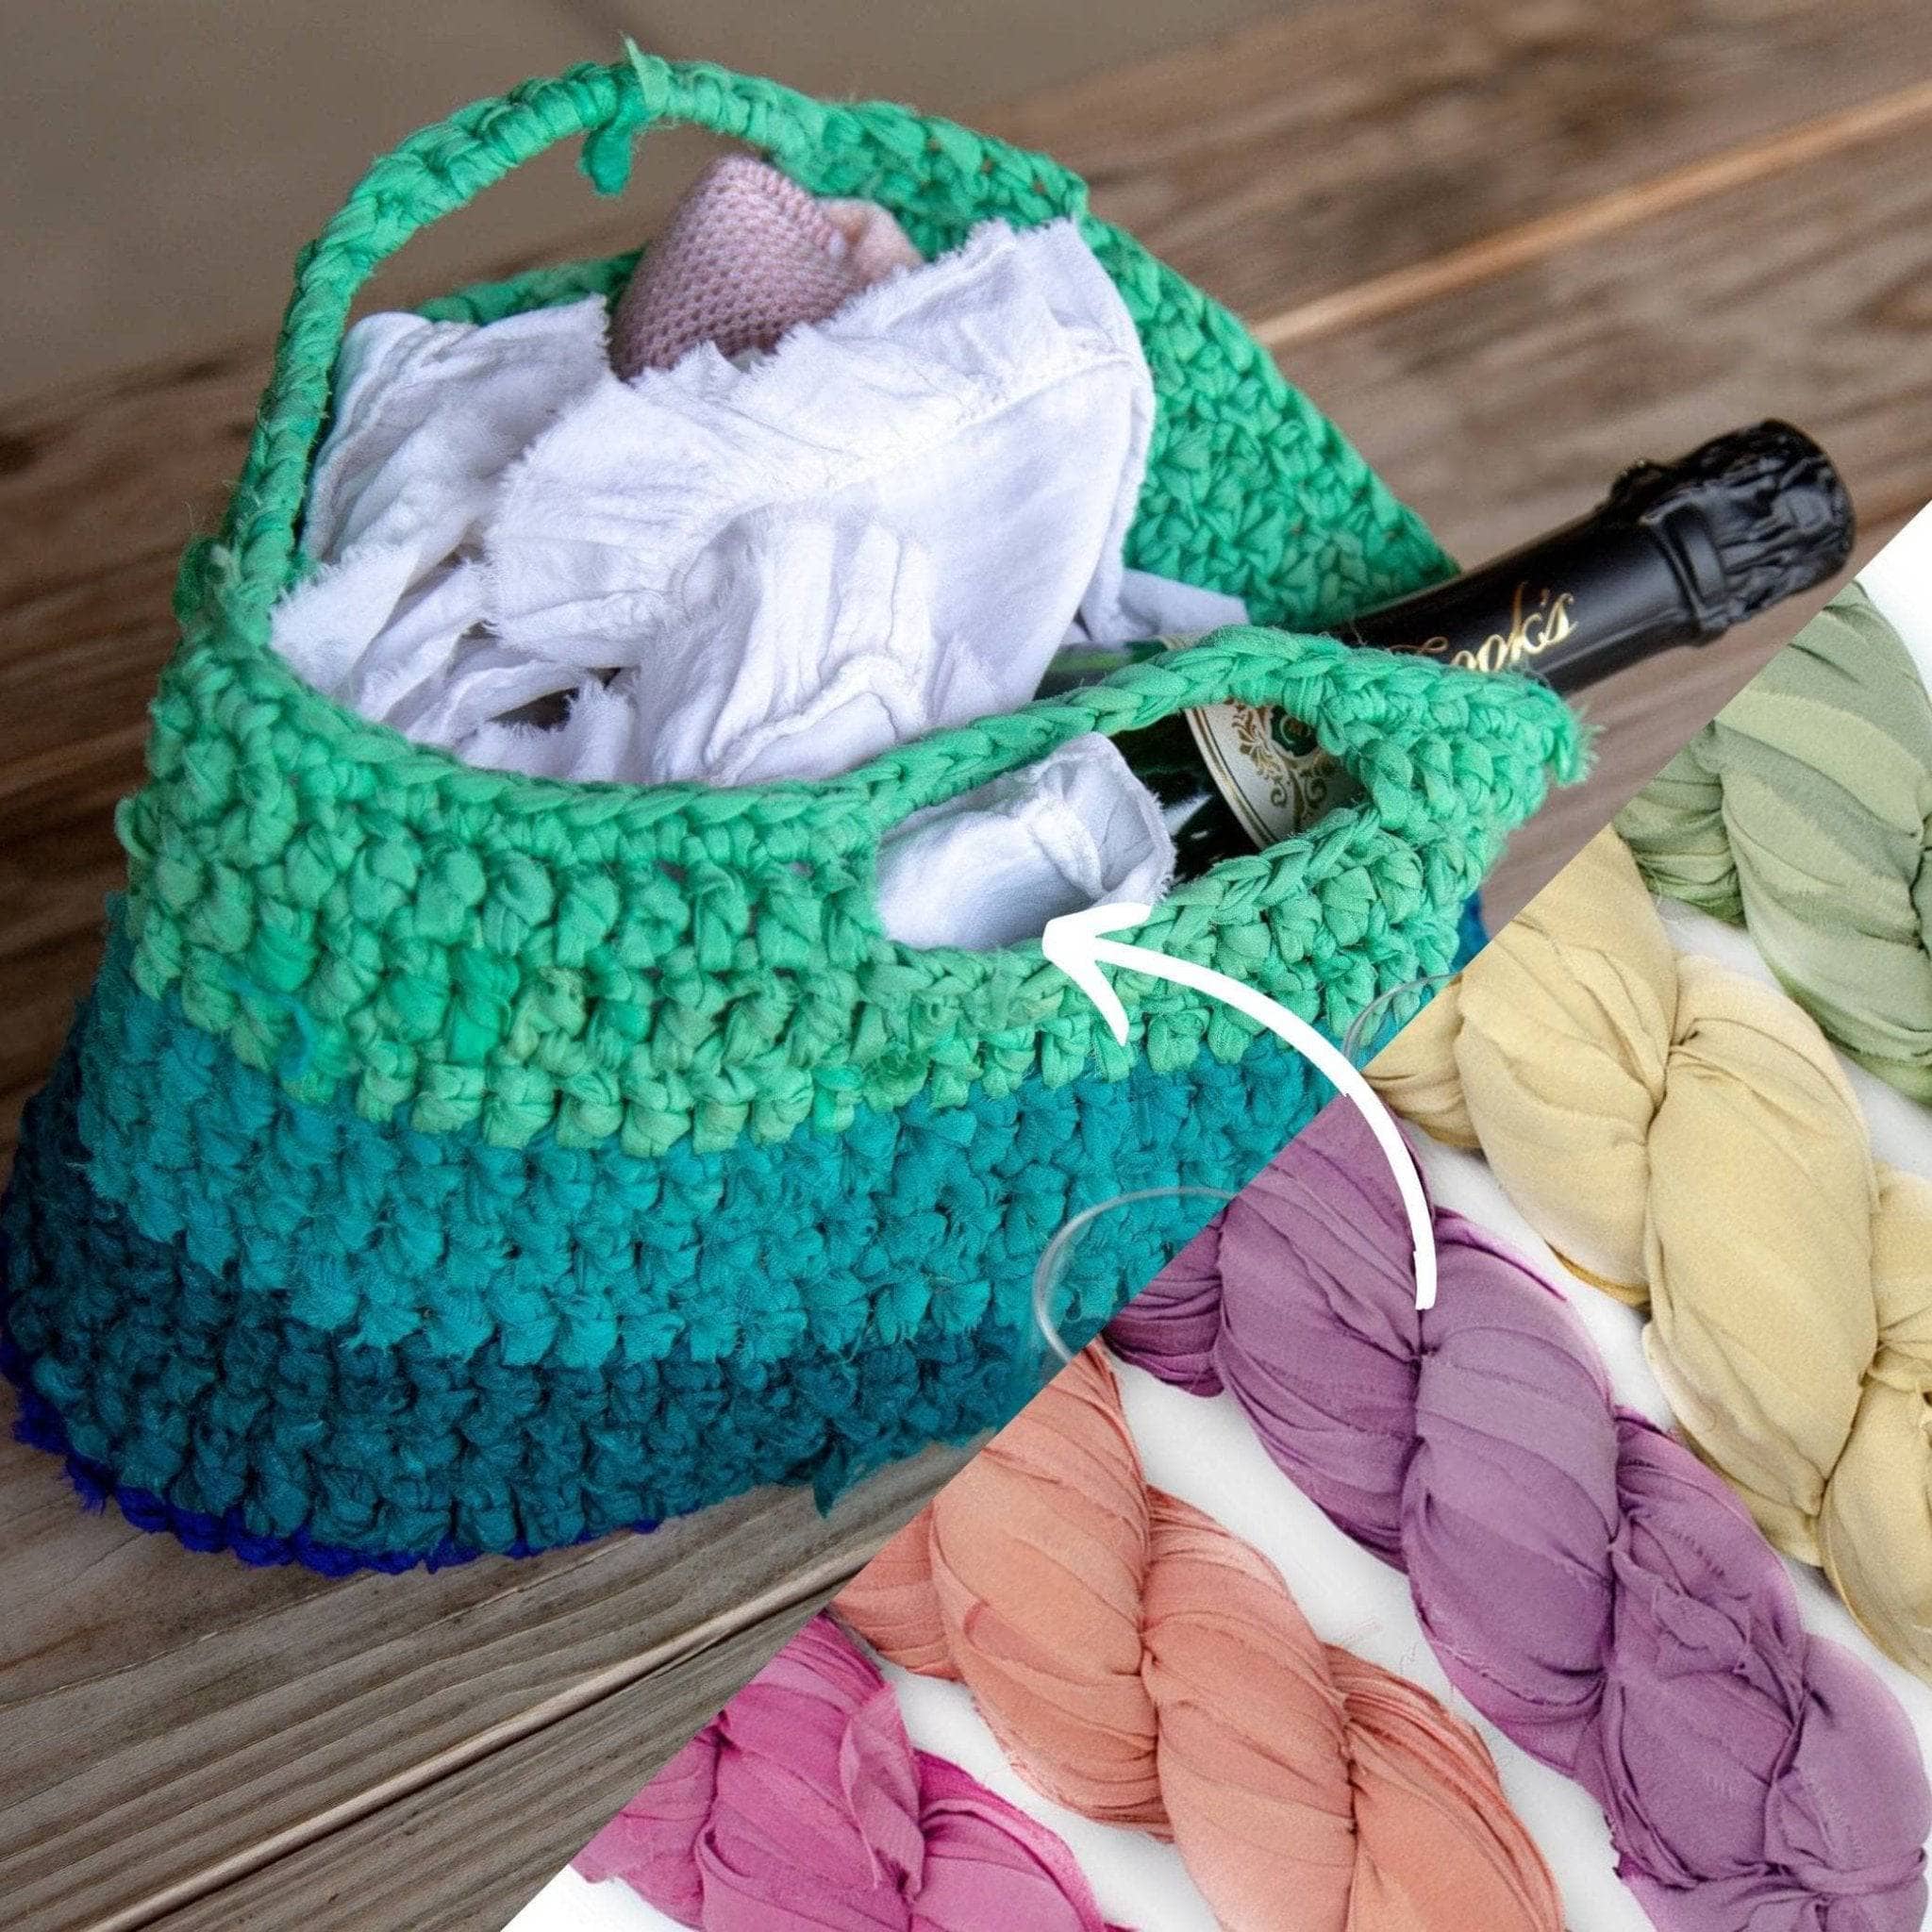 Beginners Knitting Kit, Beginners Crochet Kit, Learn to Knit Kit, Knitting  Gift, DIY Kit, Christmas Gift, Gift for Mum 